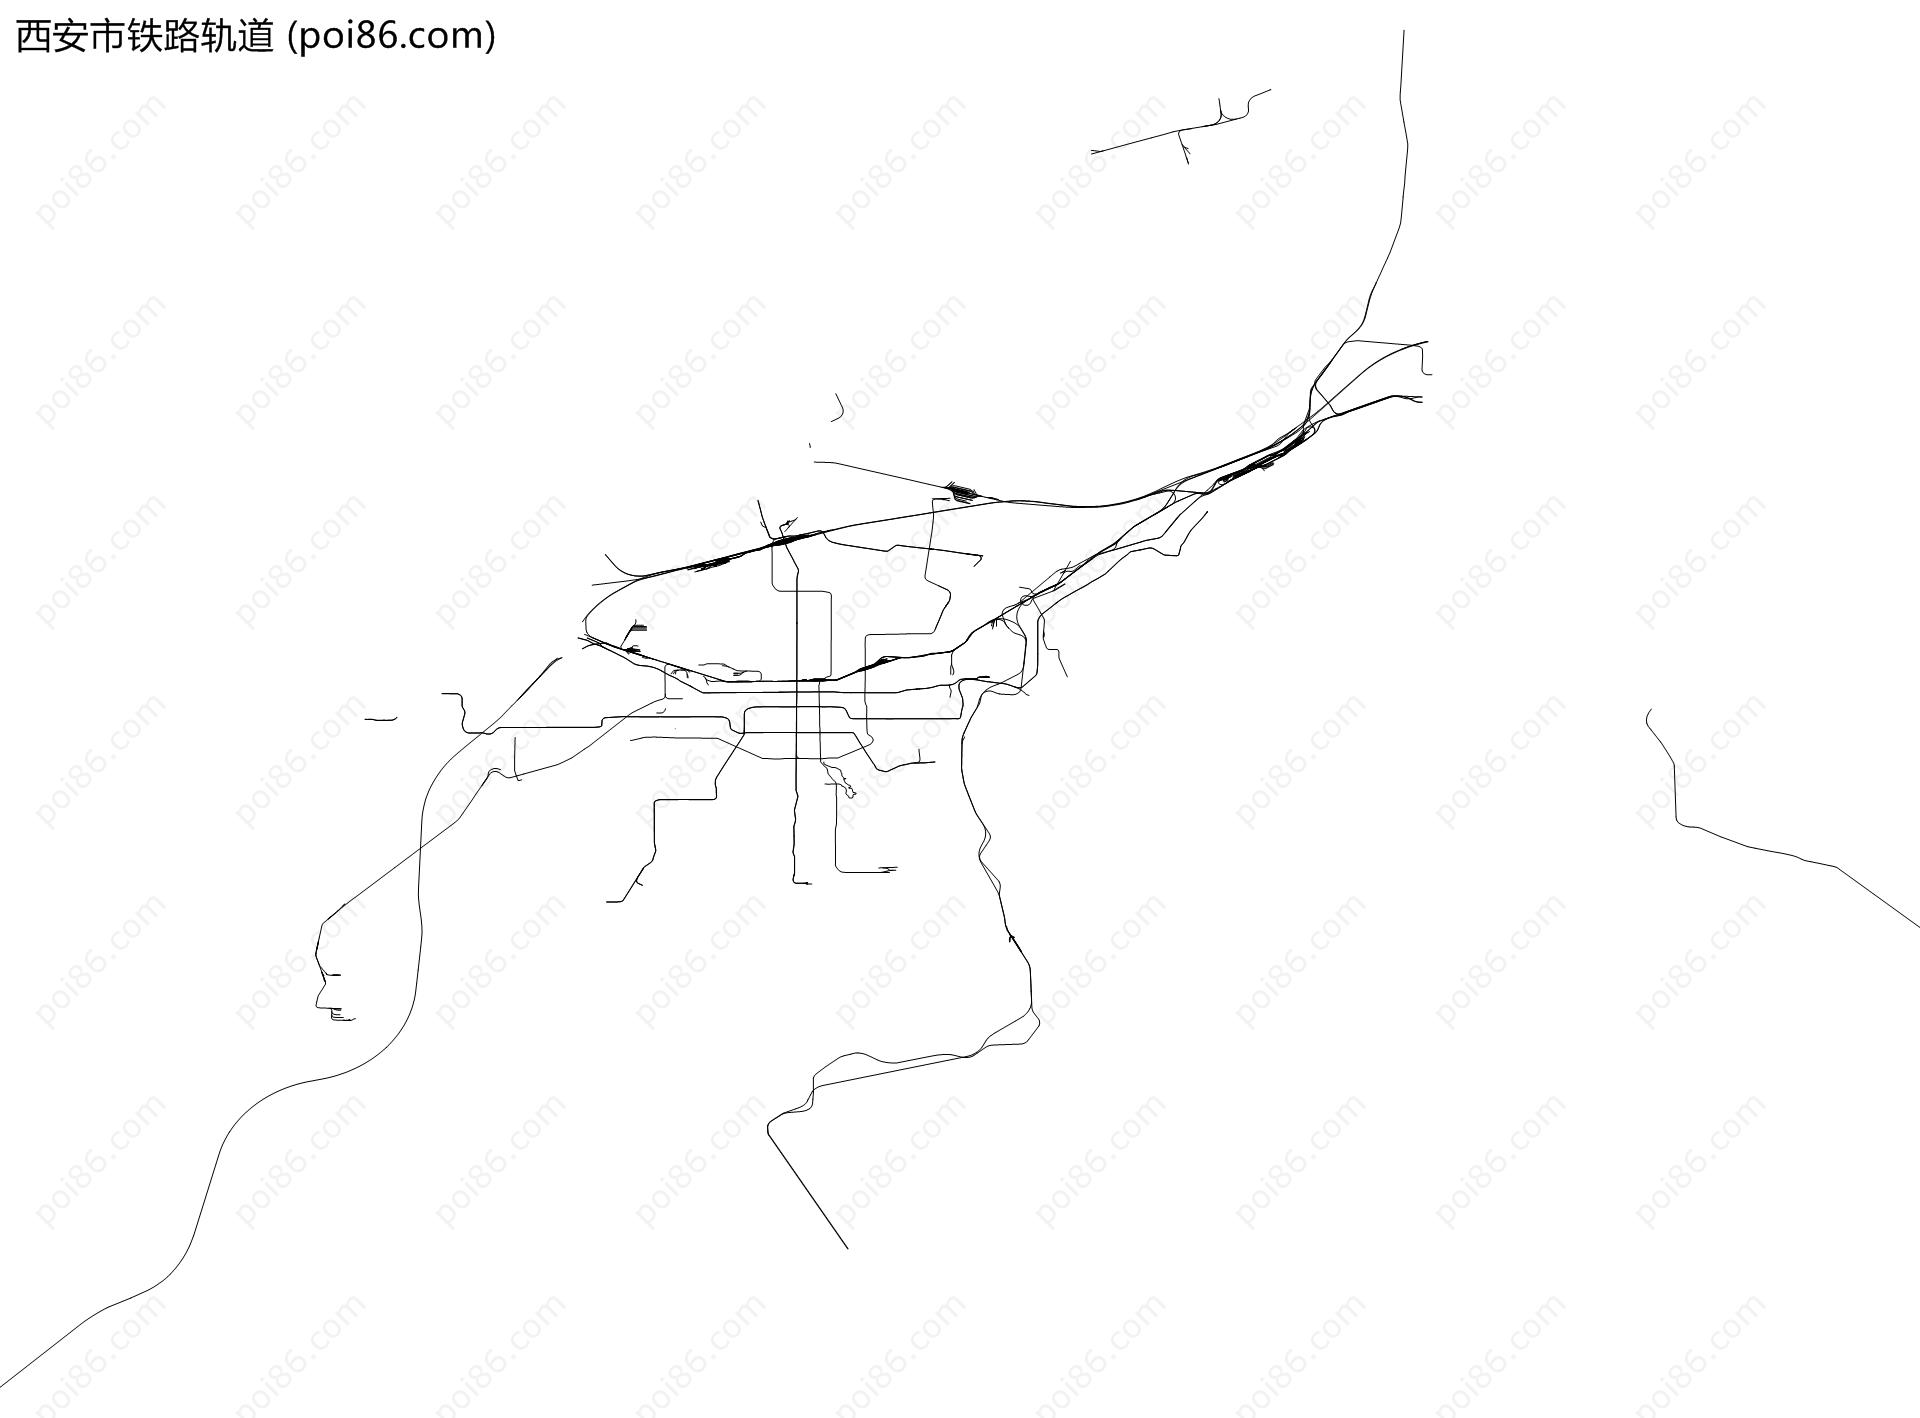 西安市铁路轨道地图